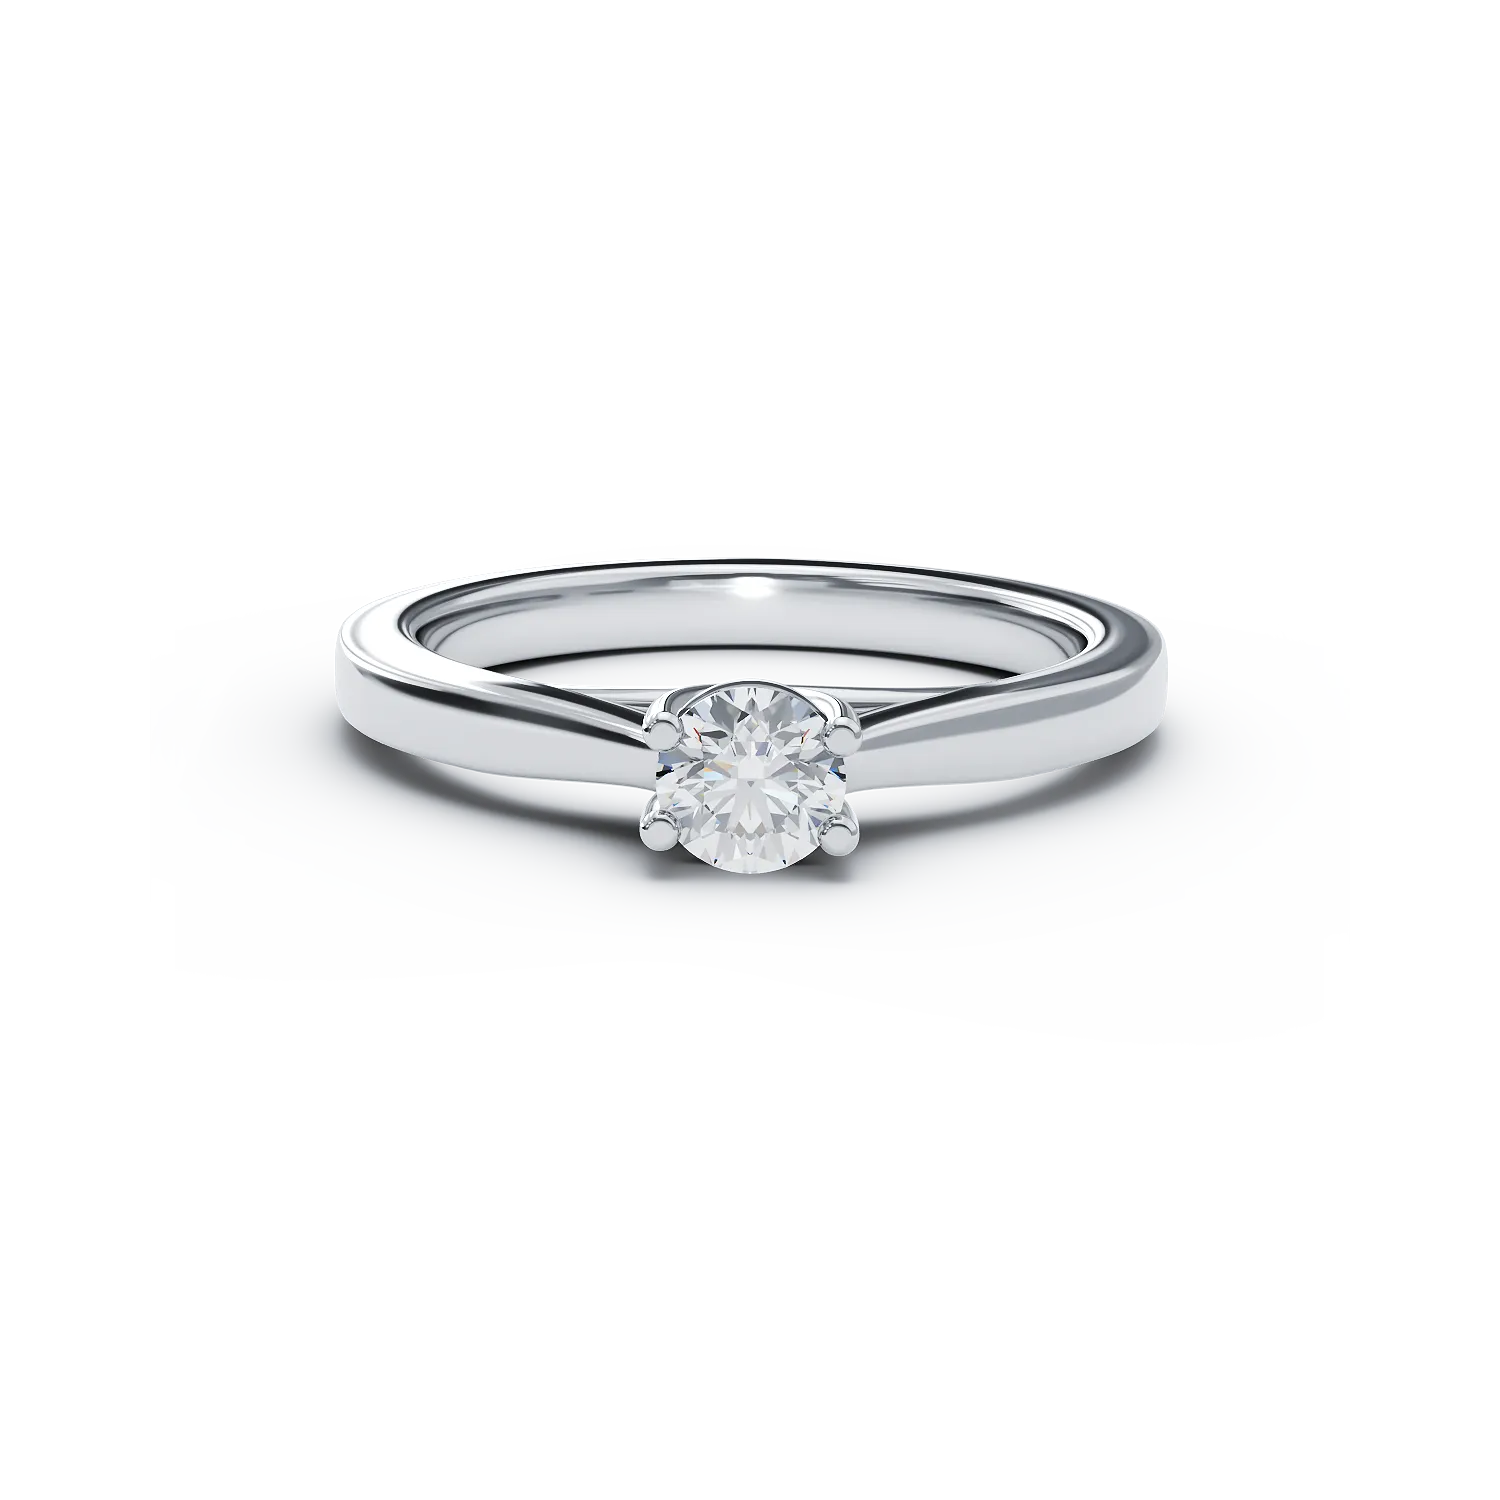 Eljegyzési gyűrű 18K-os fehér aranyból 0,25ct gyémánttal. Gramm: 3,35